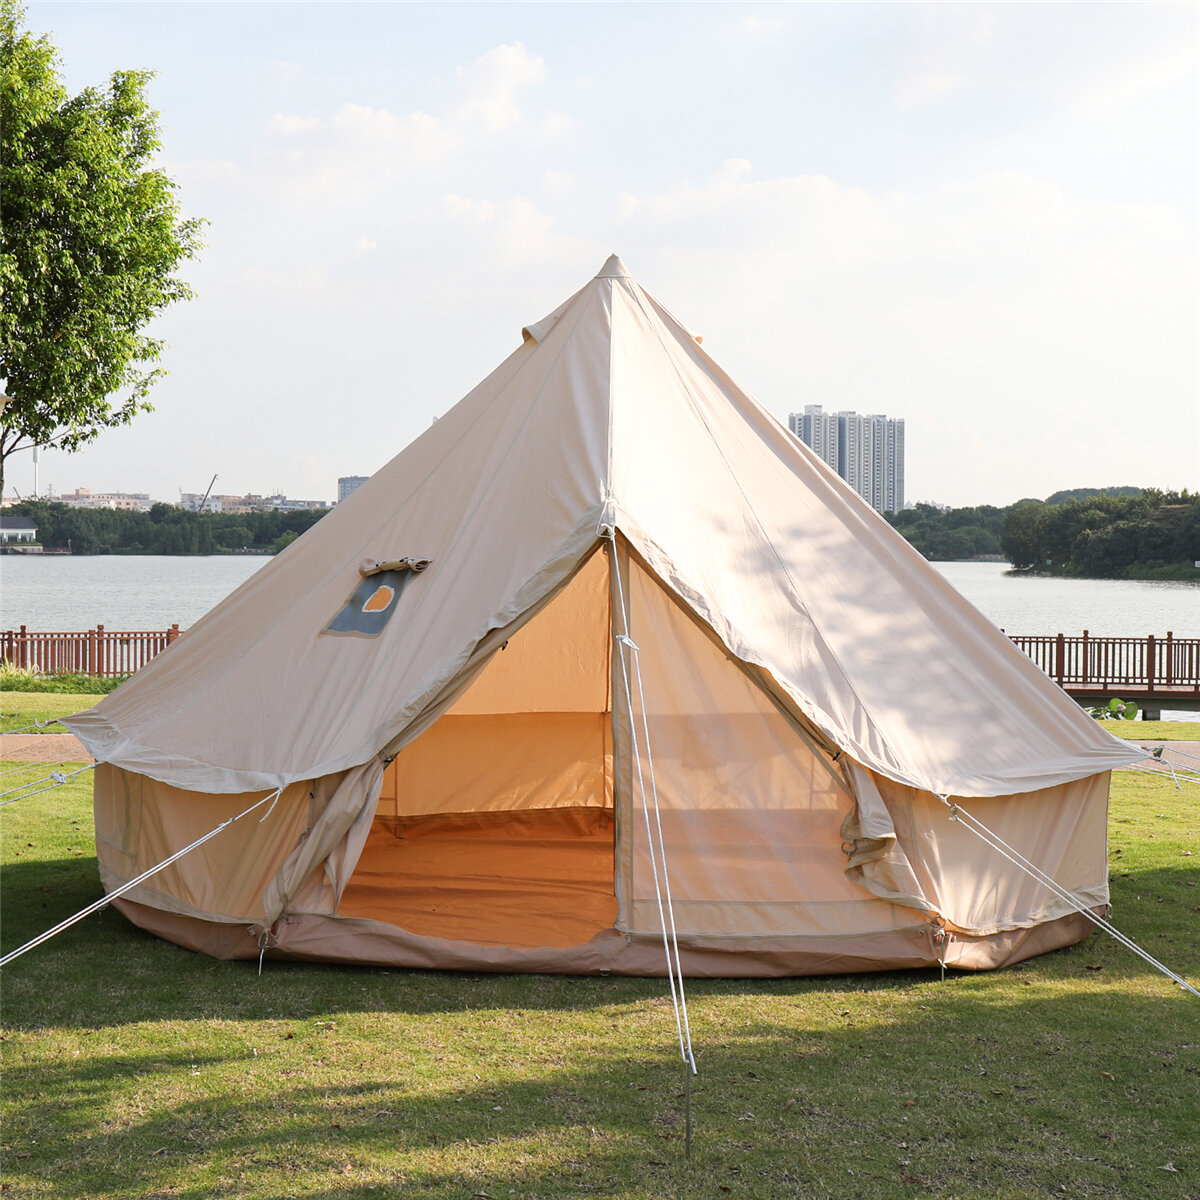 Tenda piramidale in tela di cotone per esterni campeggio Tenda 4 stagioni campeggio Glamping yurta vivente impermeabile Dimensioni 3 m 4 m per tenda familiare